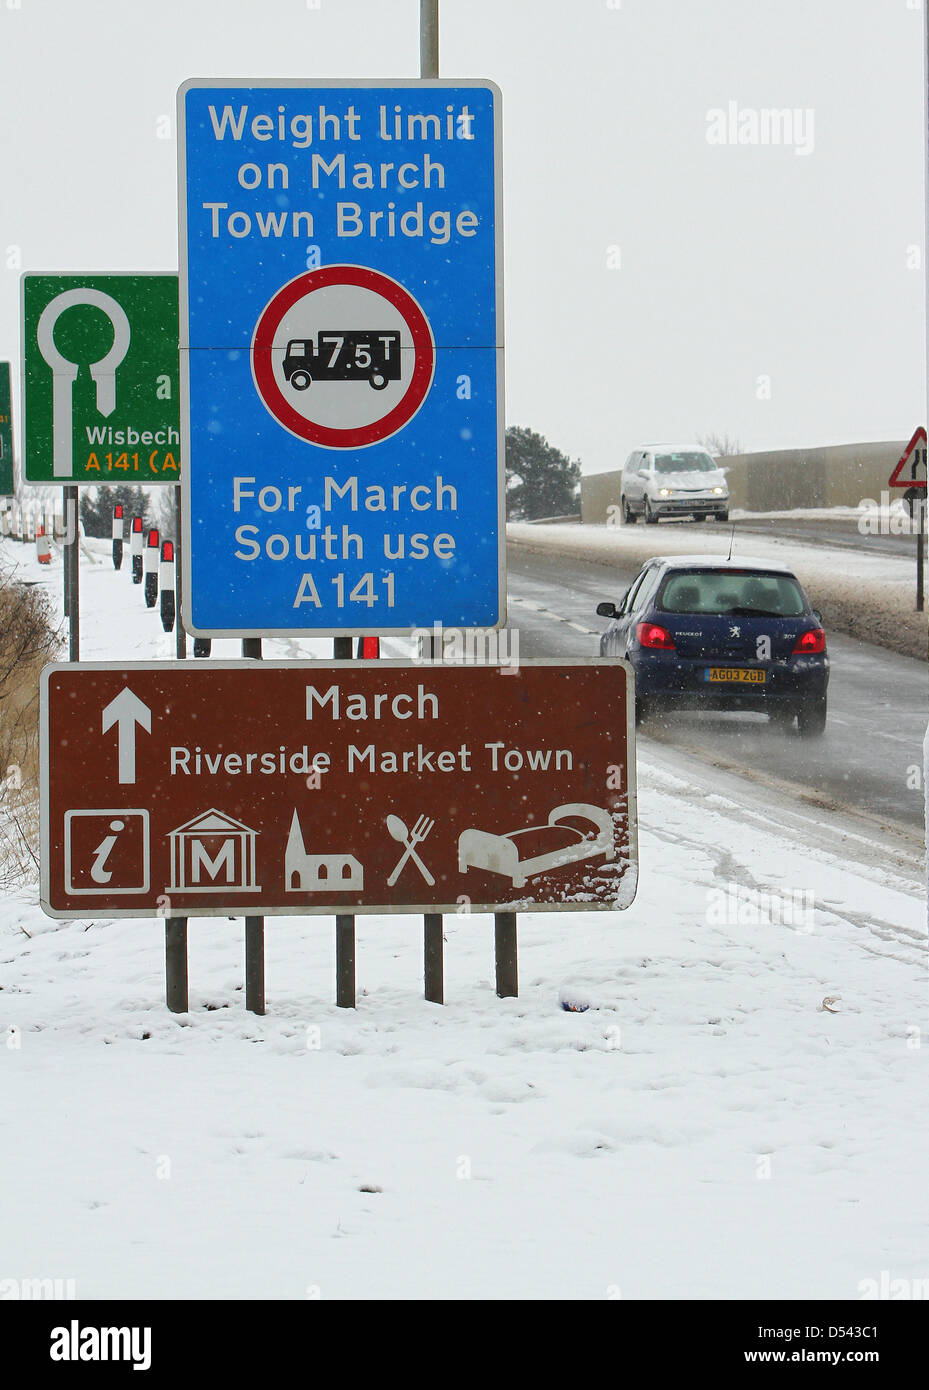 Mars, Cambridgeshire, Royaume-Uni. 24 mars 2013. Unseasonal la neige pour la fin de mars à mars, un quartier calme de la ville de marché dans les fens. Crédit : Colin Bennett/Alamy Live News Banque D'Images